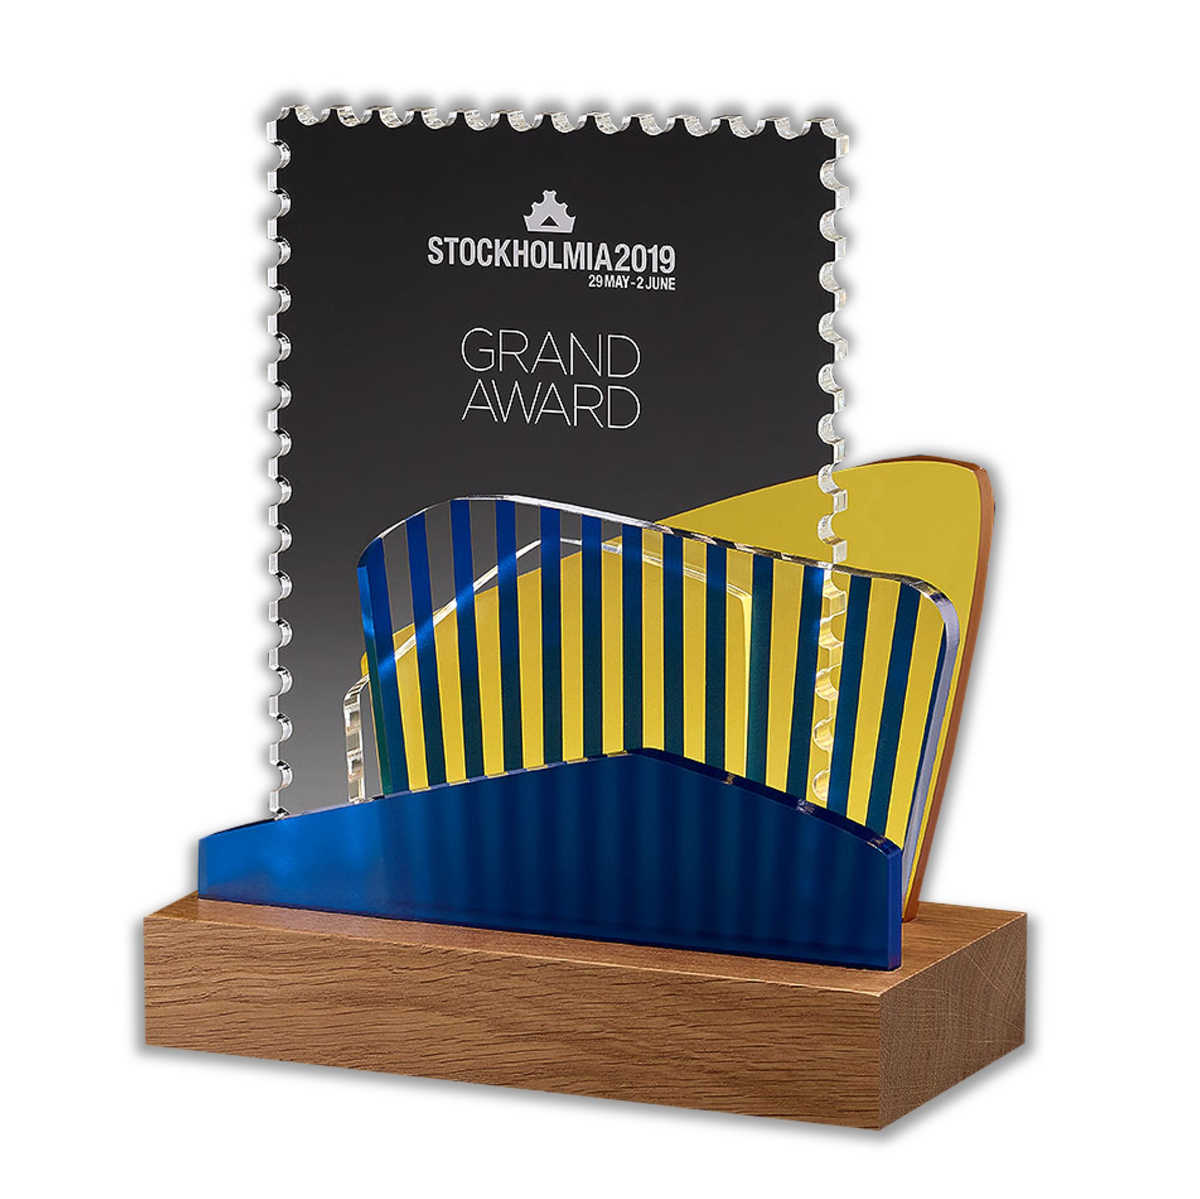 Stockholmia Grand Award